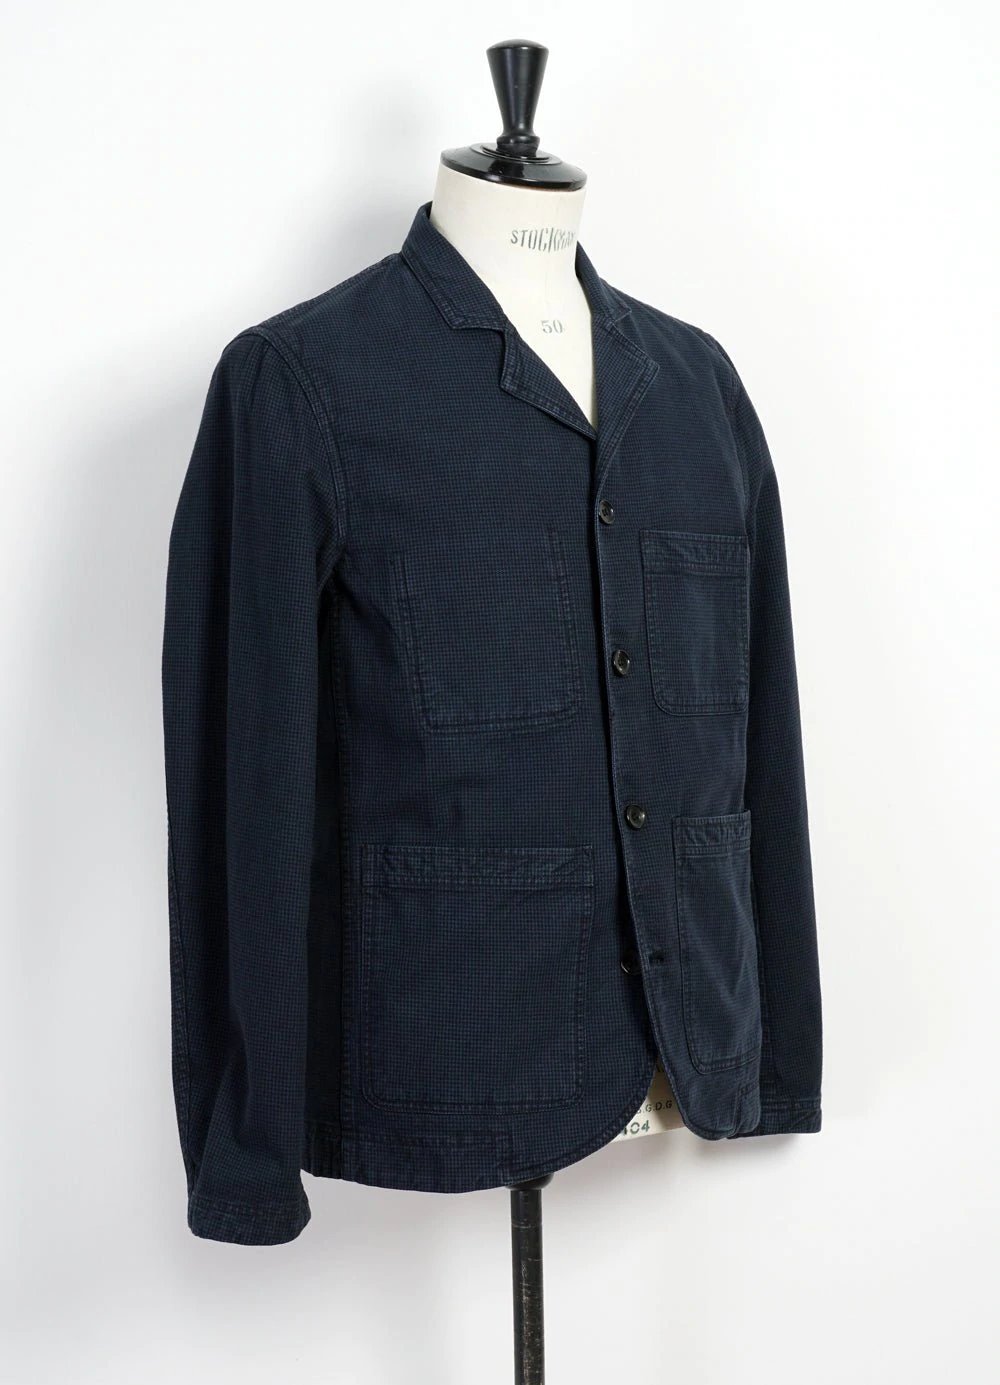 Hansen Garments NICOLAI | Informal 4-button Blazer | black navy